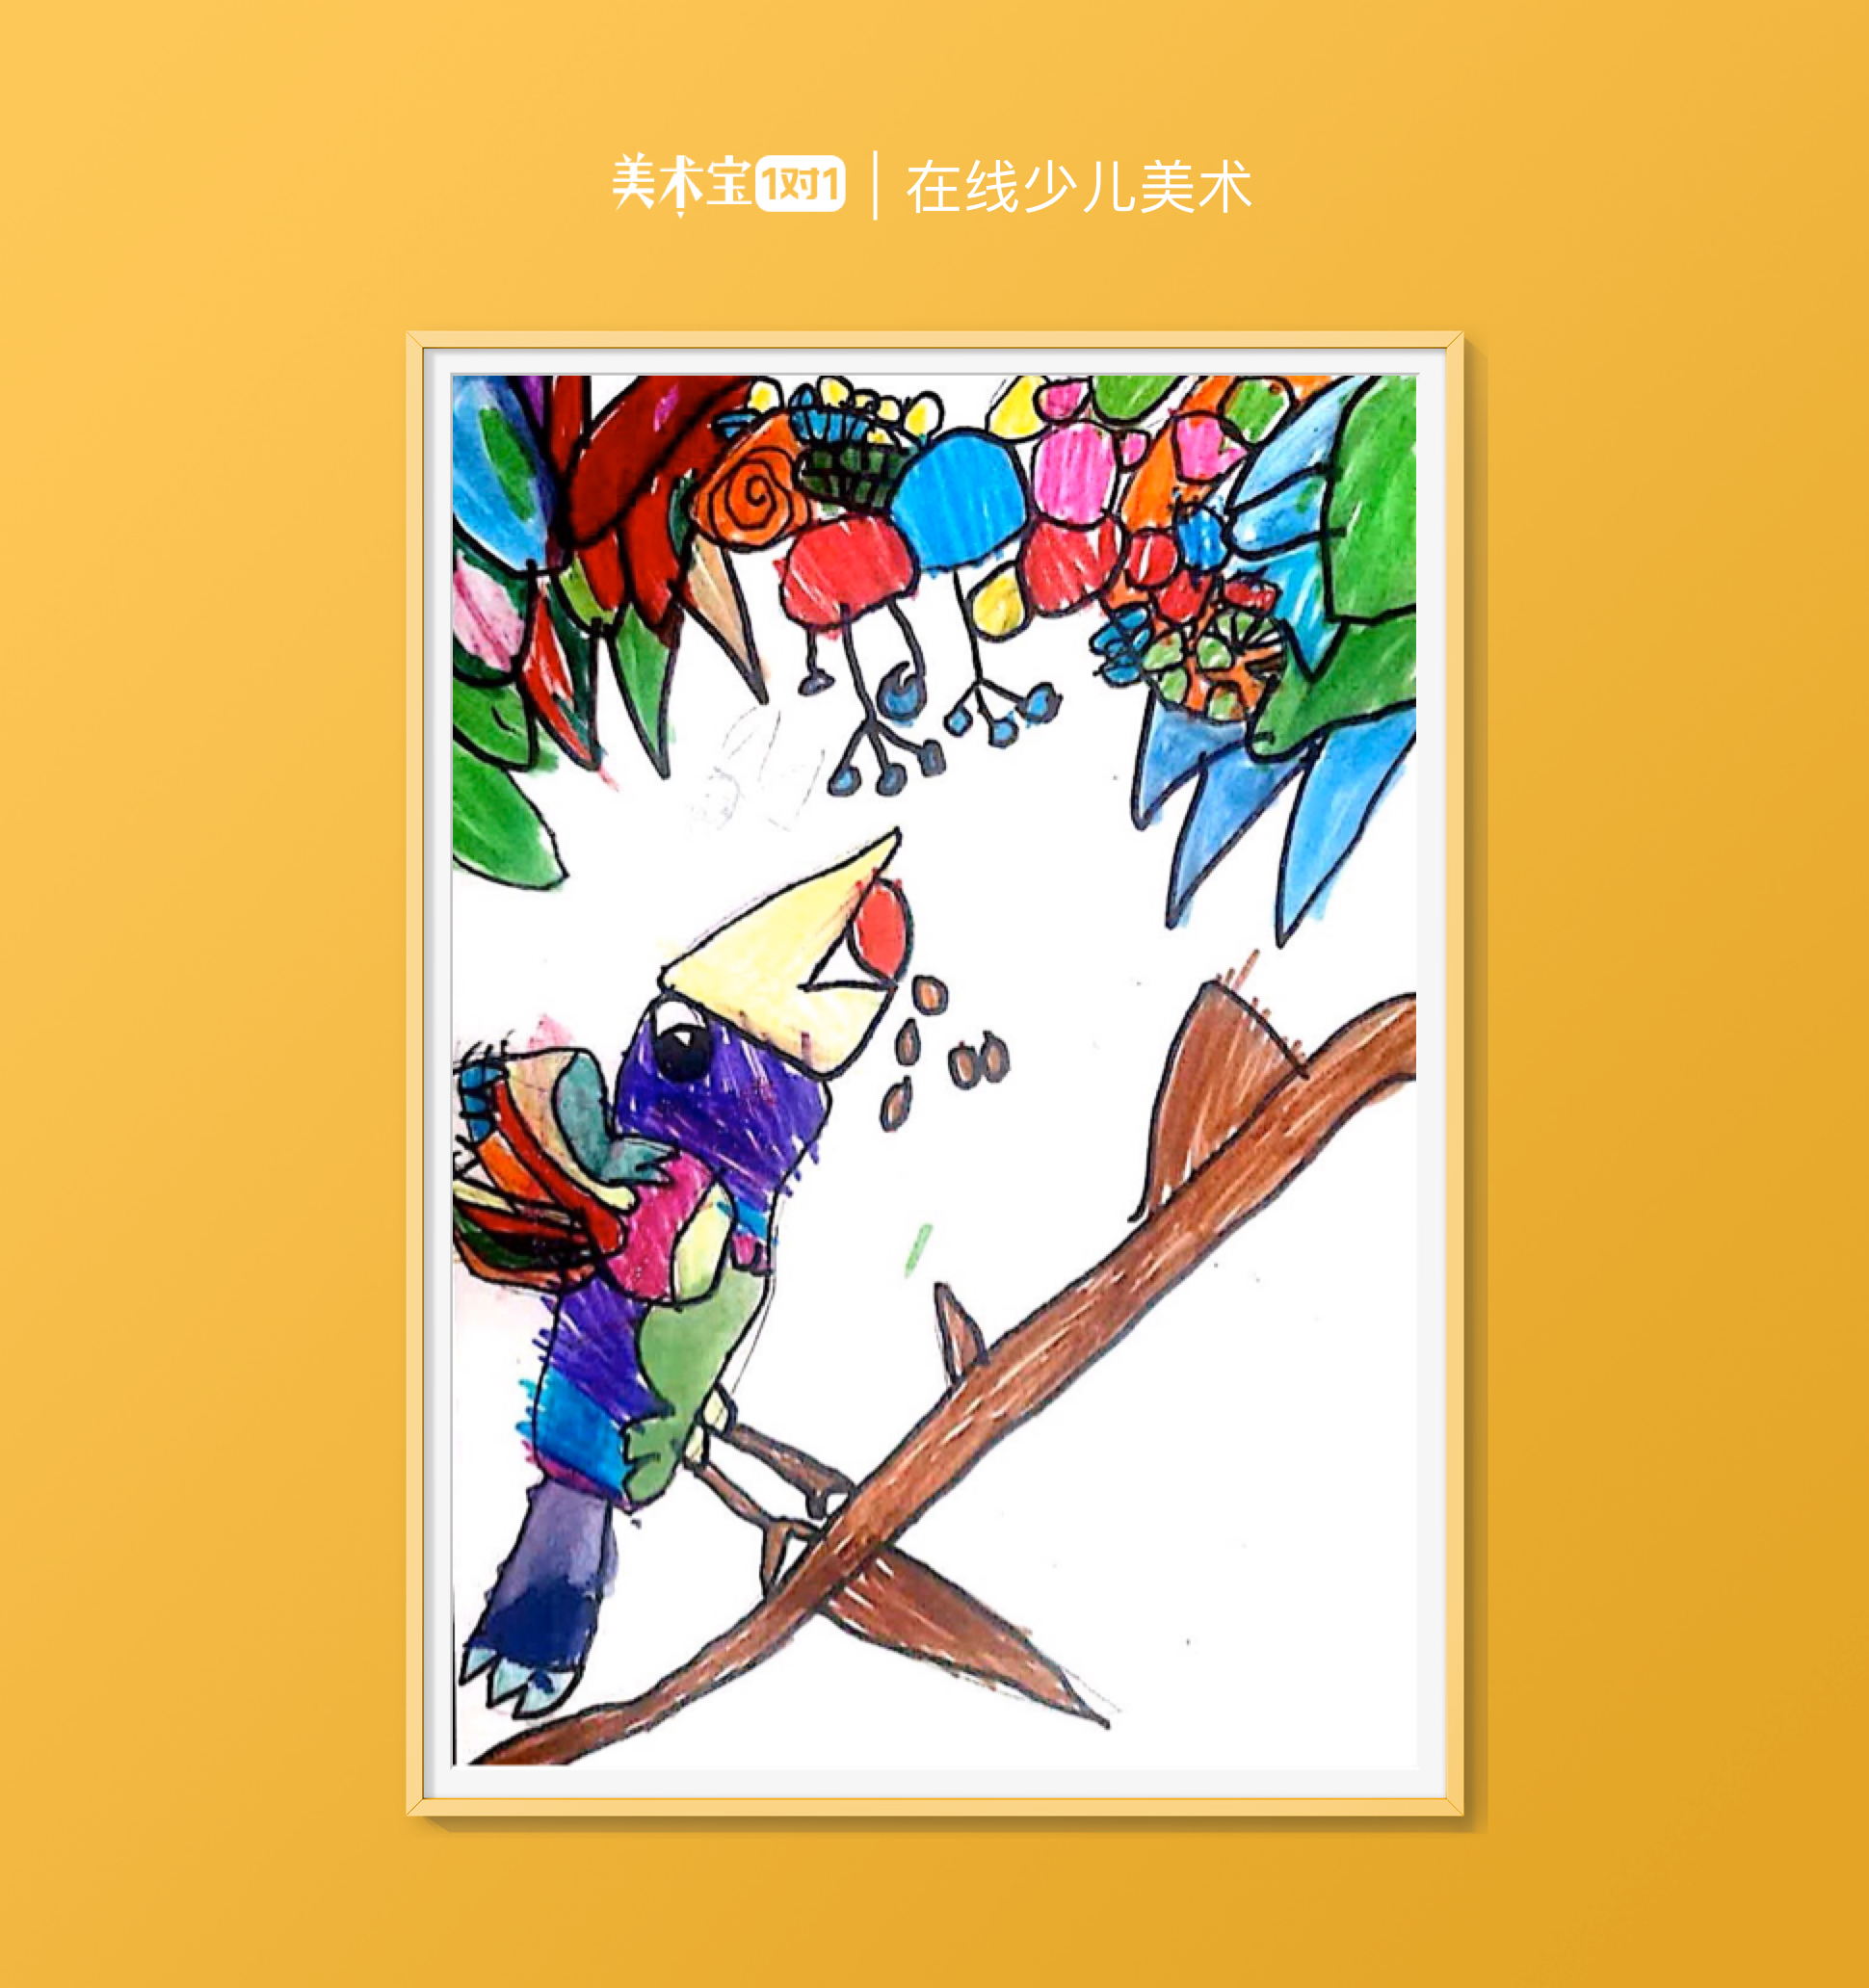 果果4岁创意画《变色鸟》邻近色-美术宝